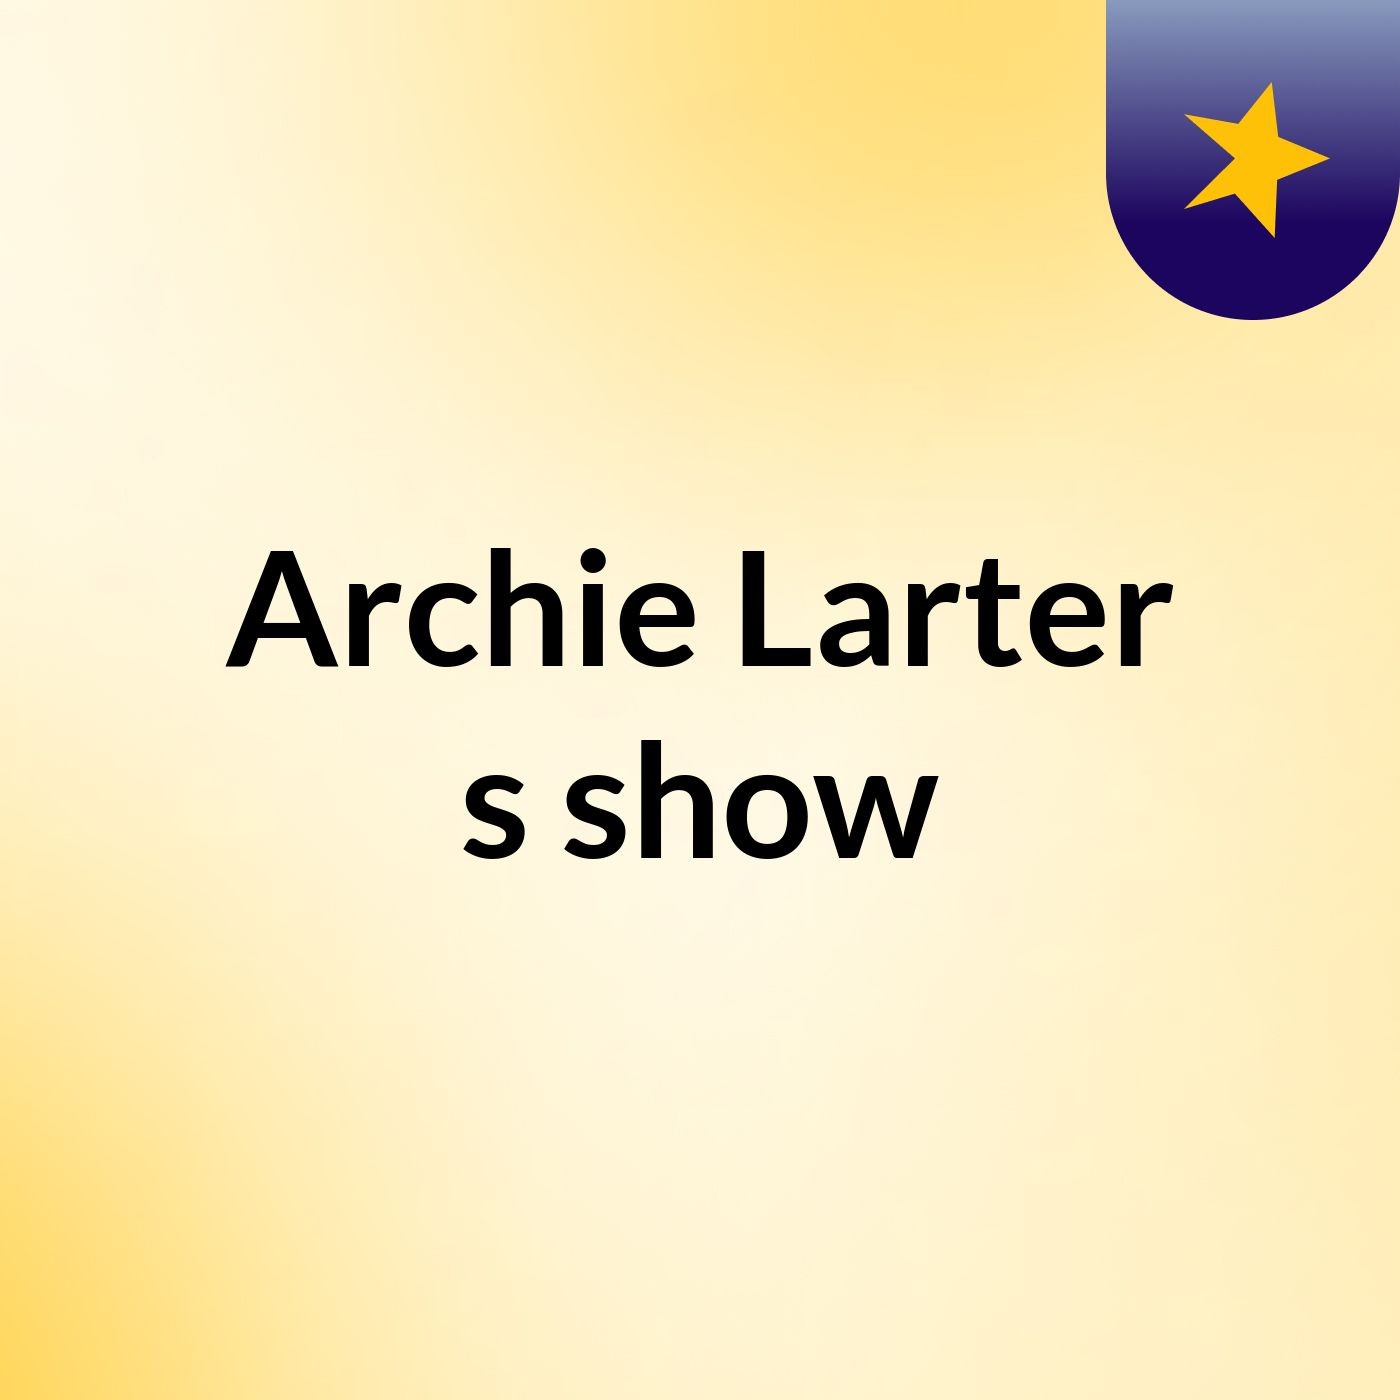 Archie Larter's show